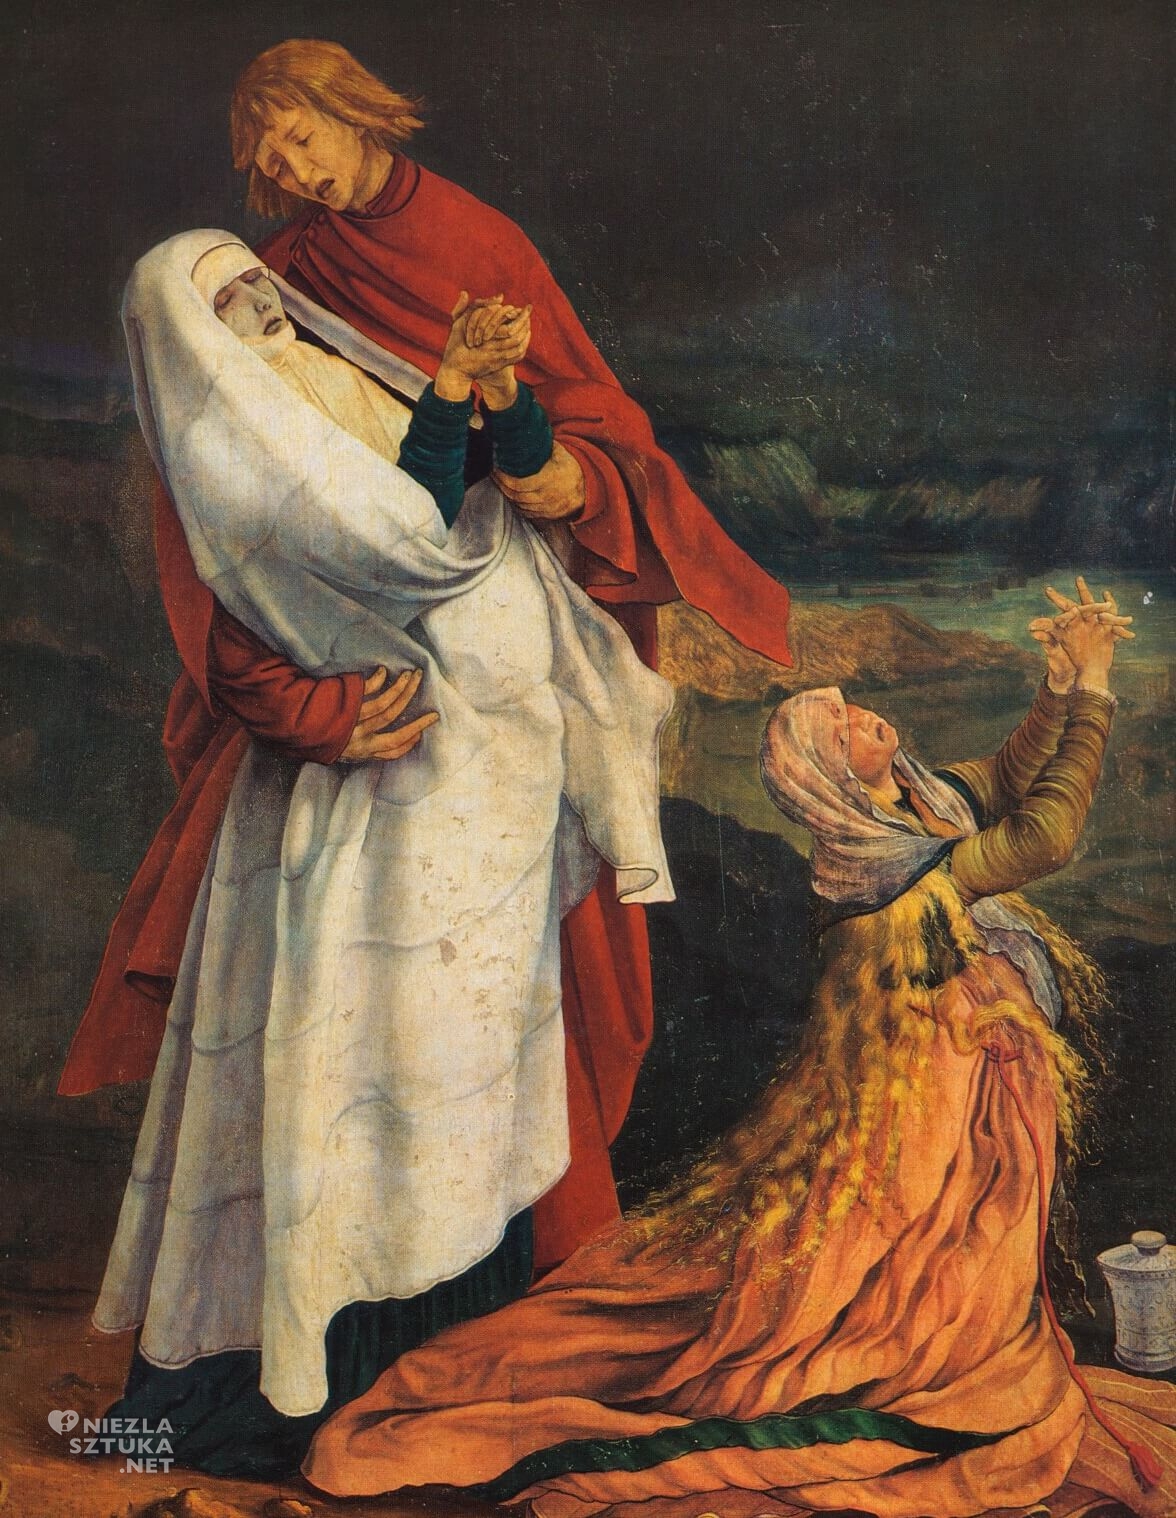 Matthias Grünewald, Ołtarz z Isenheim, Ukrzyżowanie, Niezła sztuka